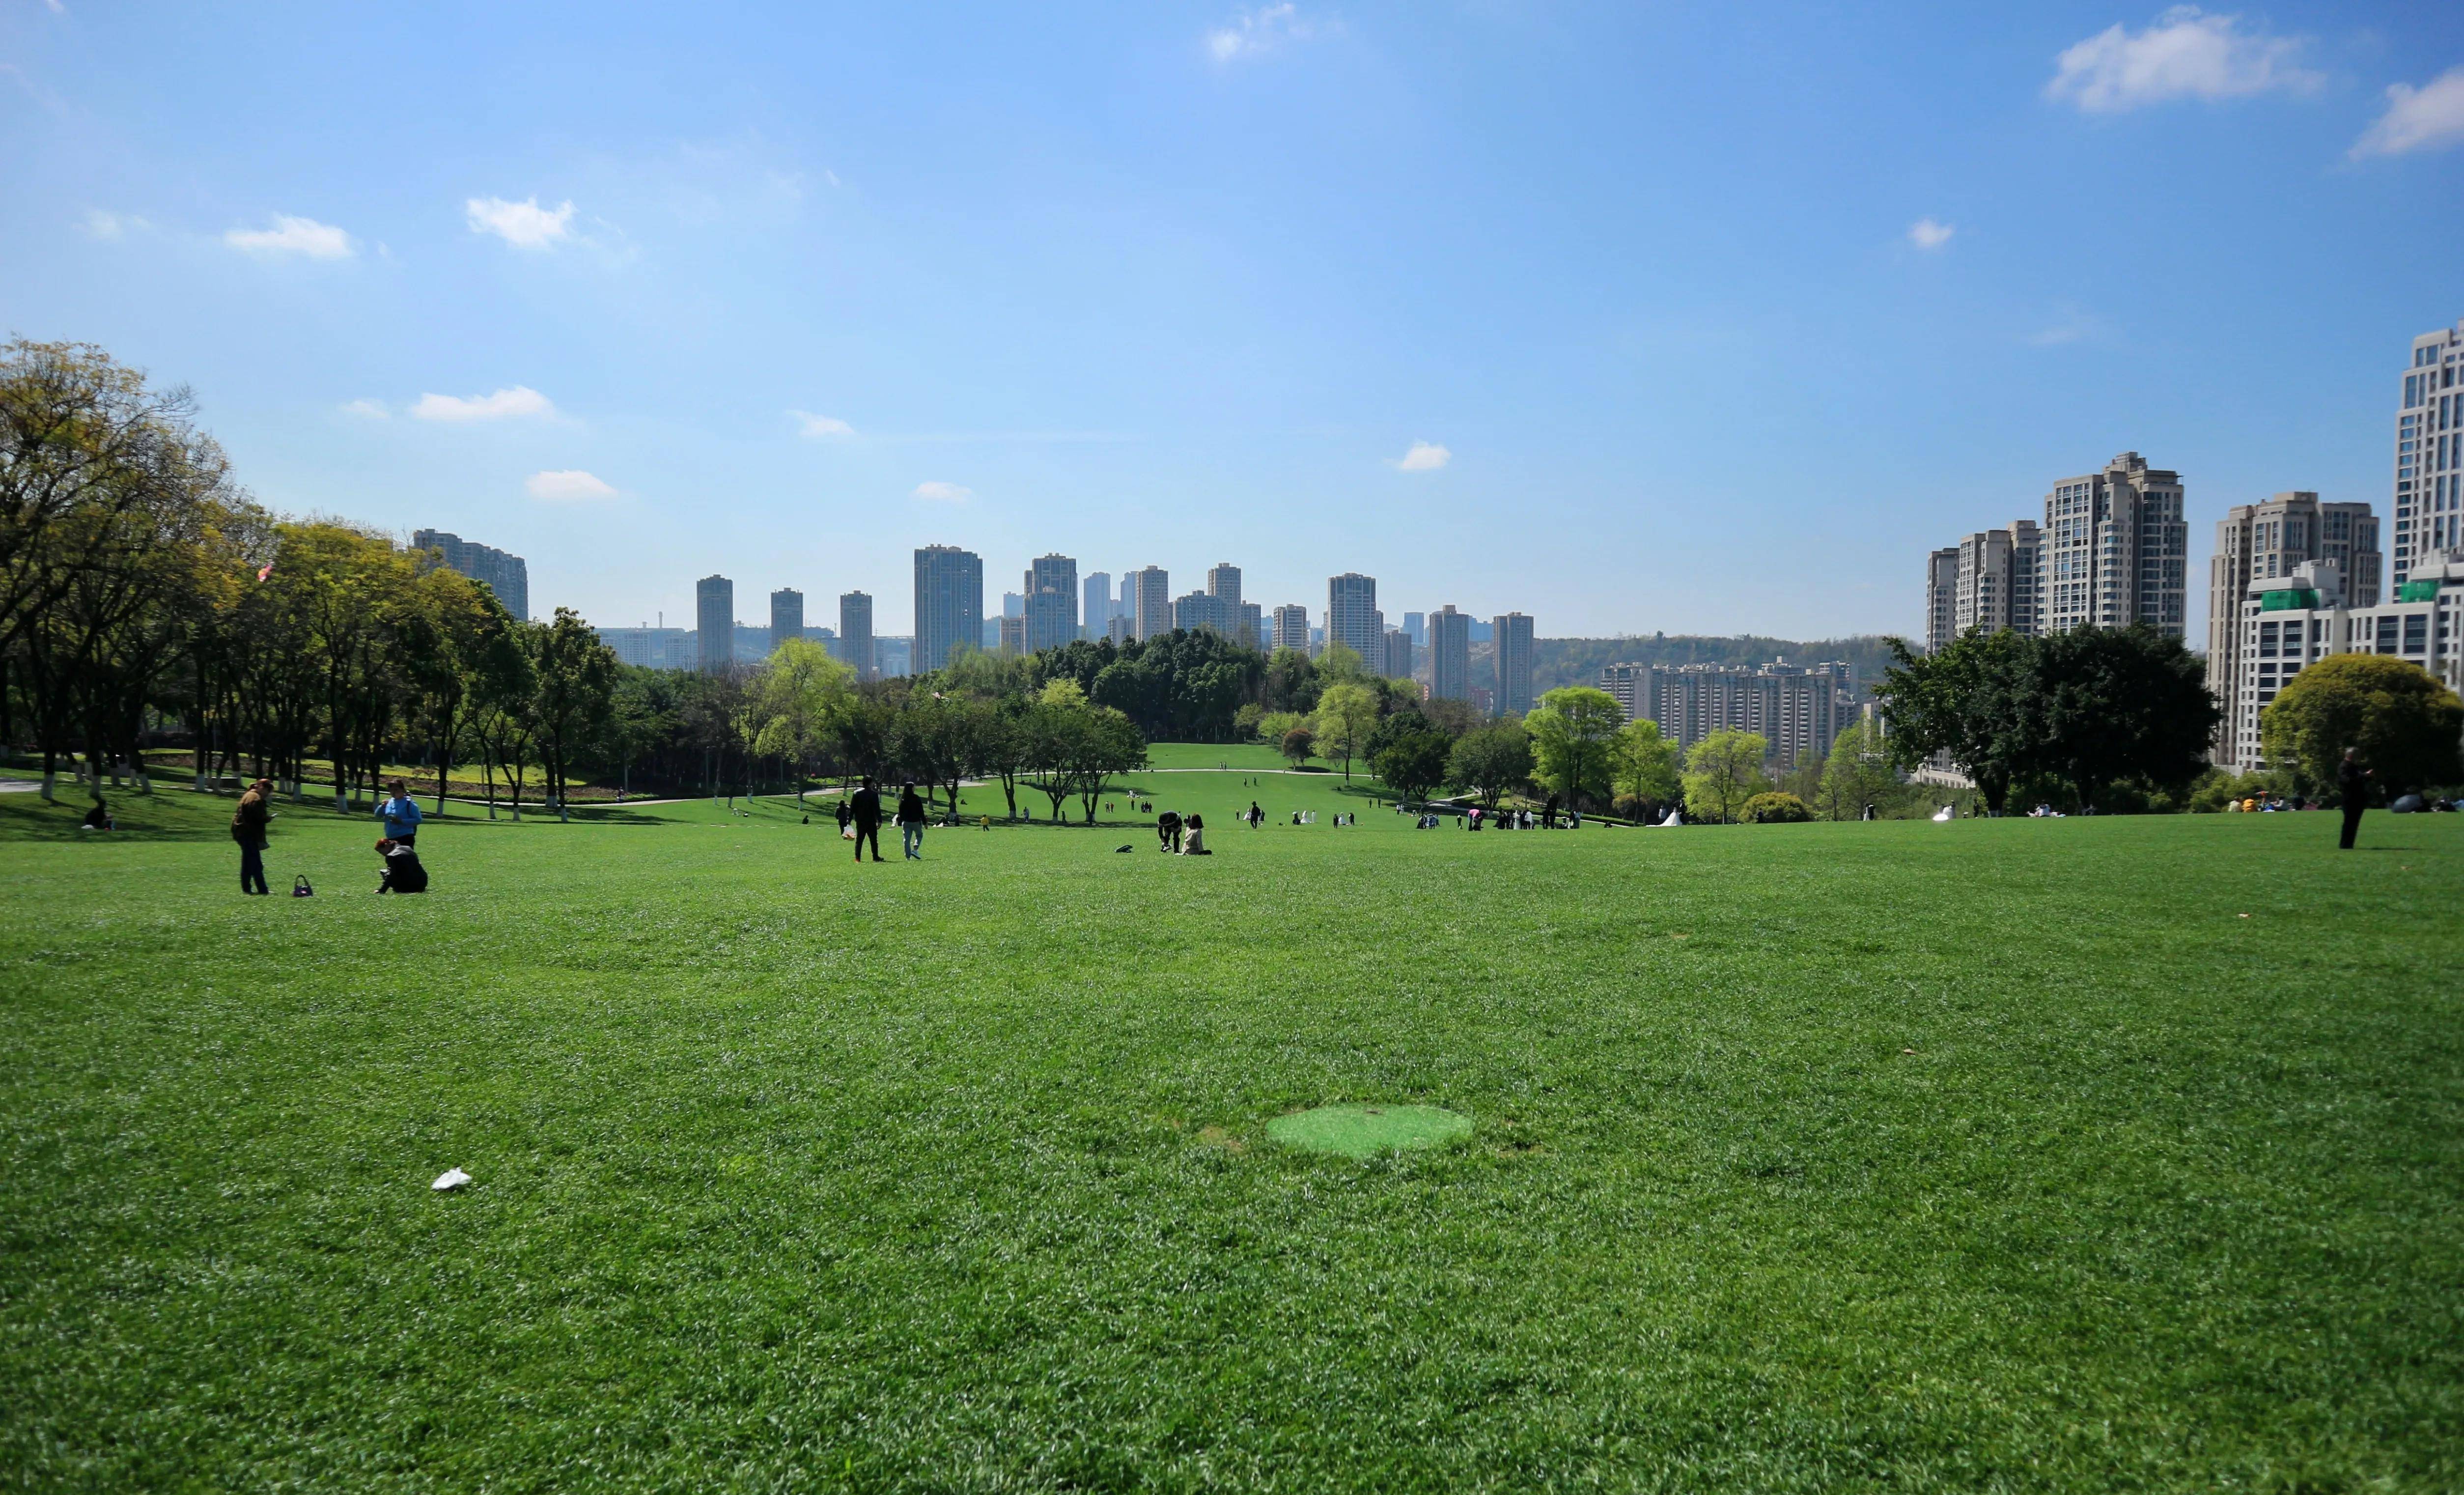 草坪!全是大草坪,重庆中央公园太适合春游了(攻略)